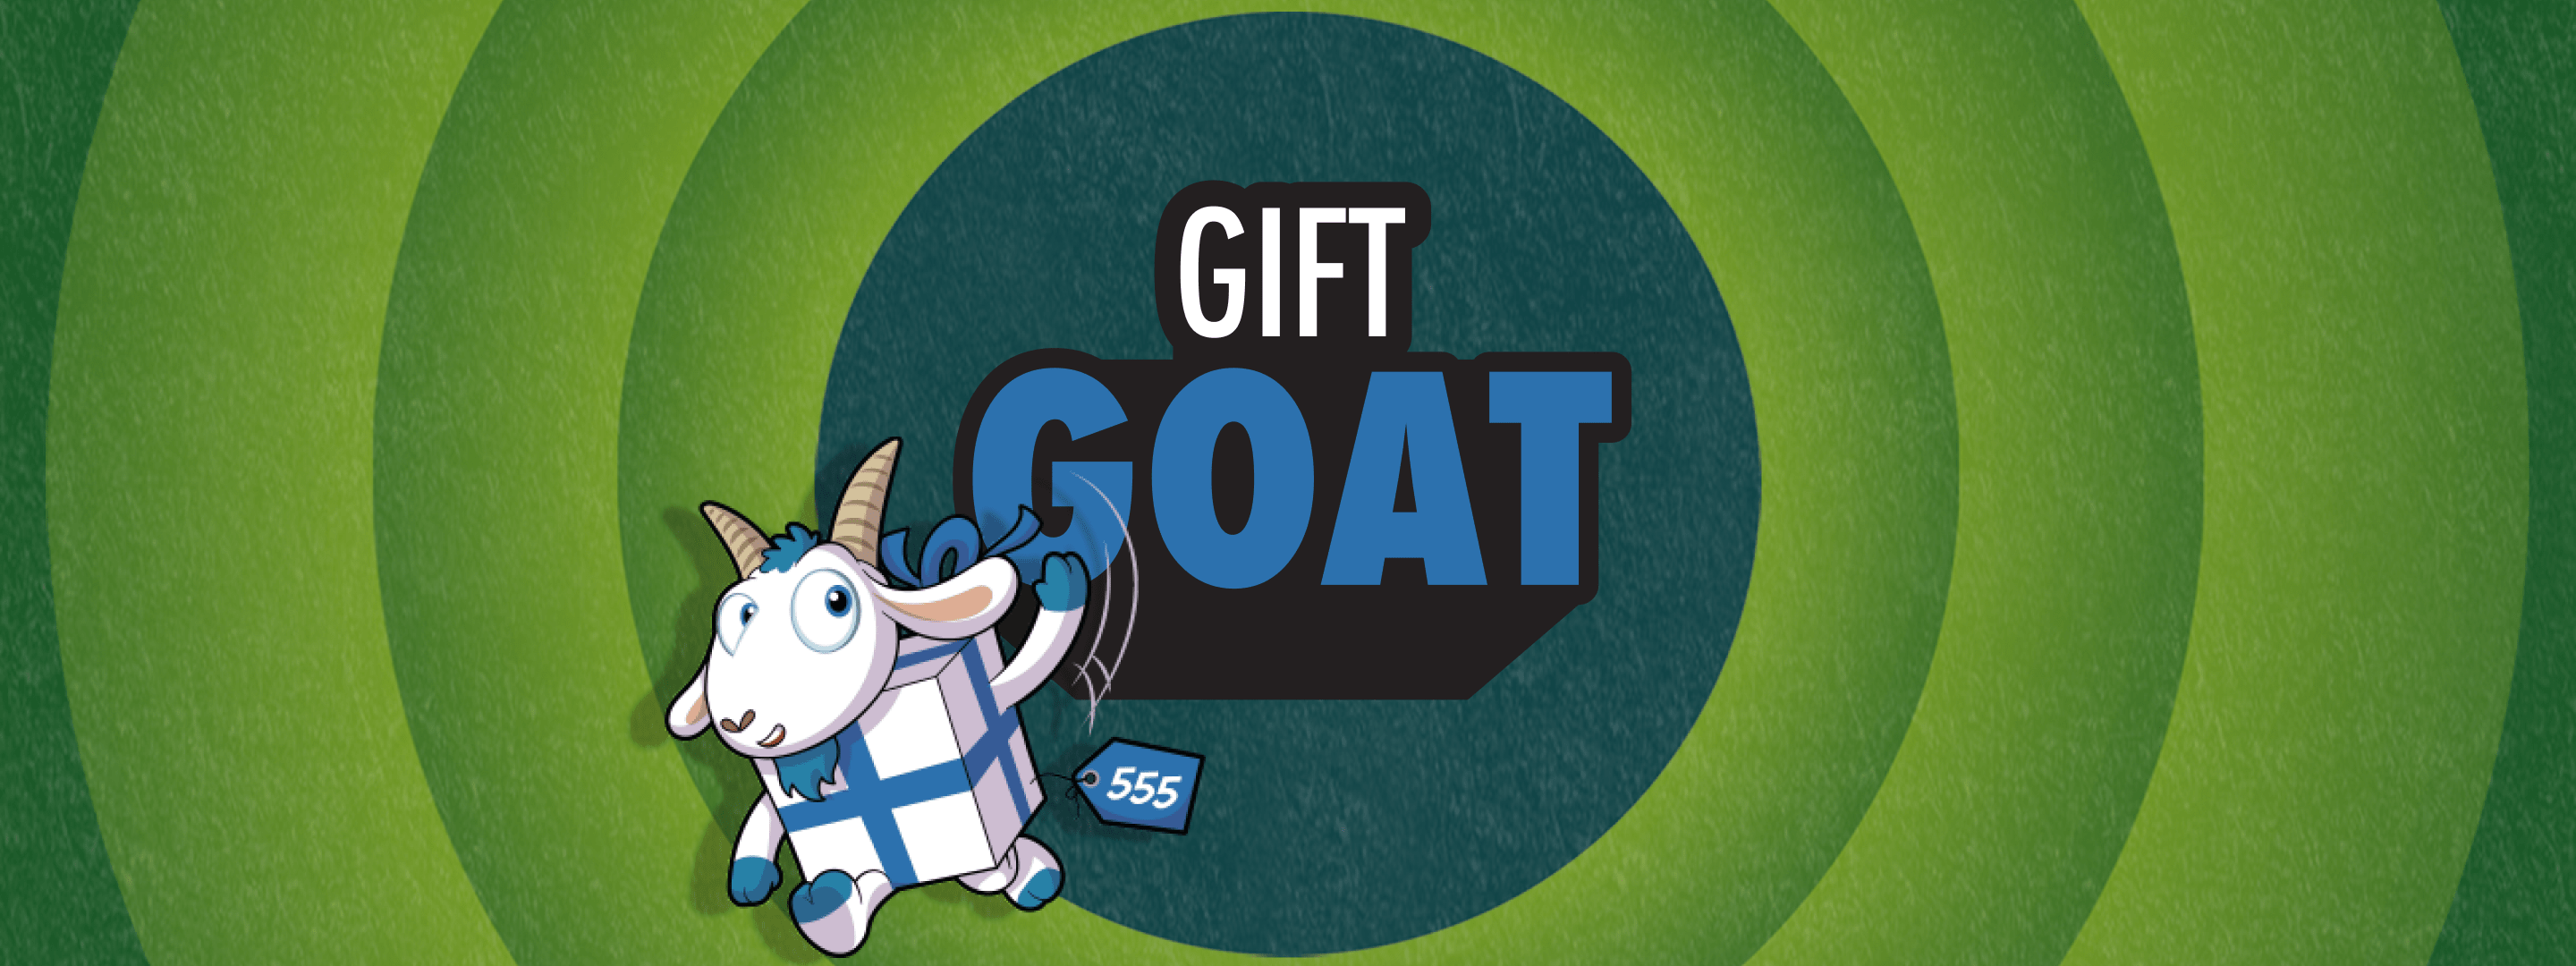 Gift Goat